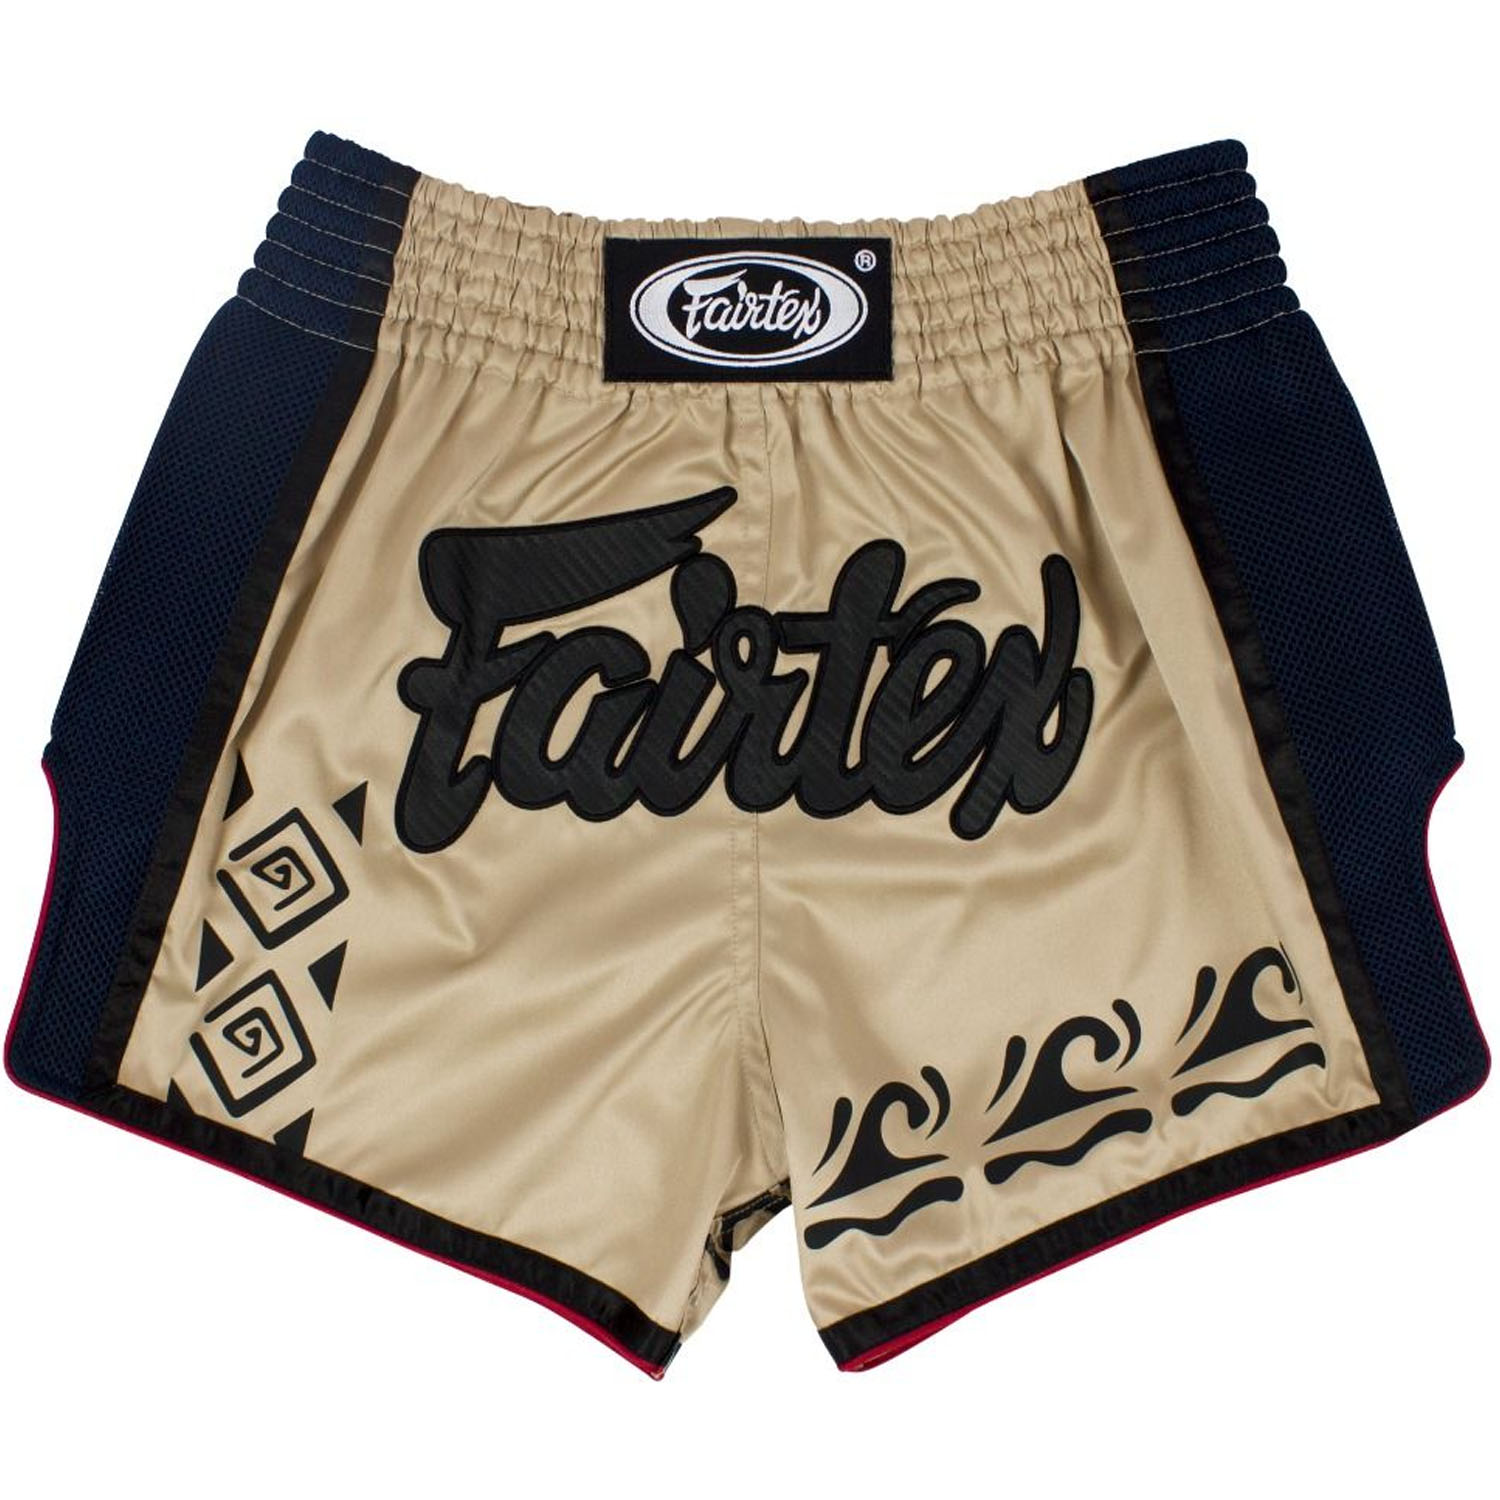 Fairtex Muay Thai Shorts, BS1713, Tribal, beige